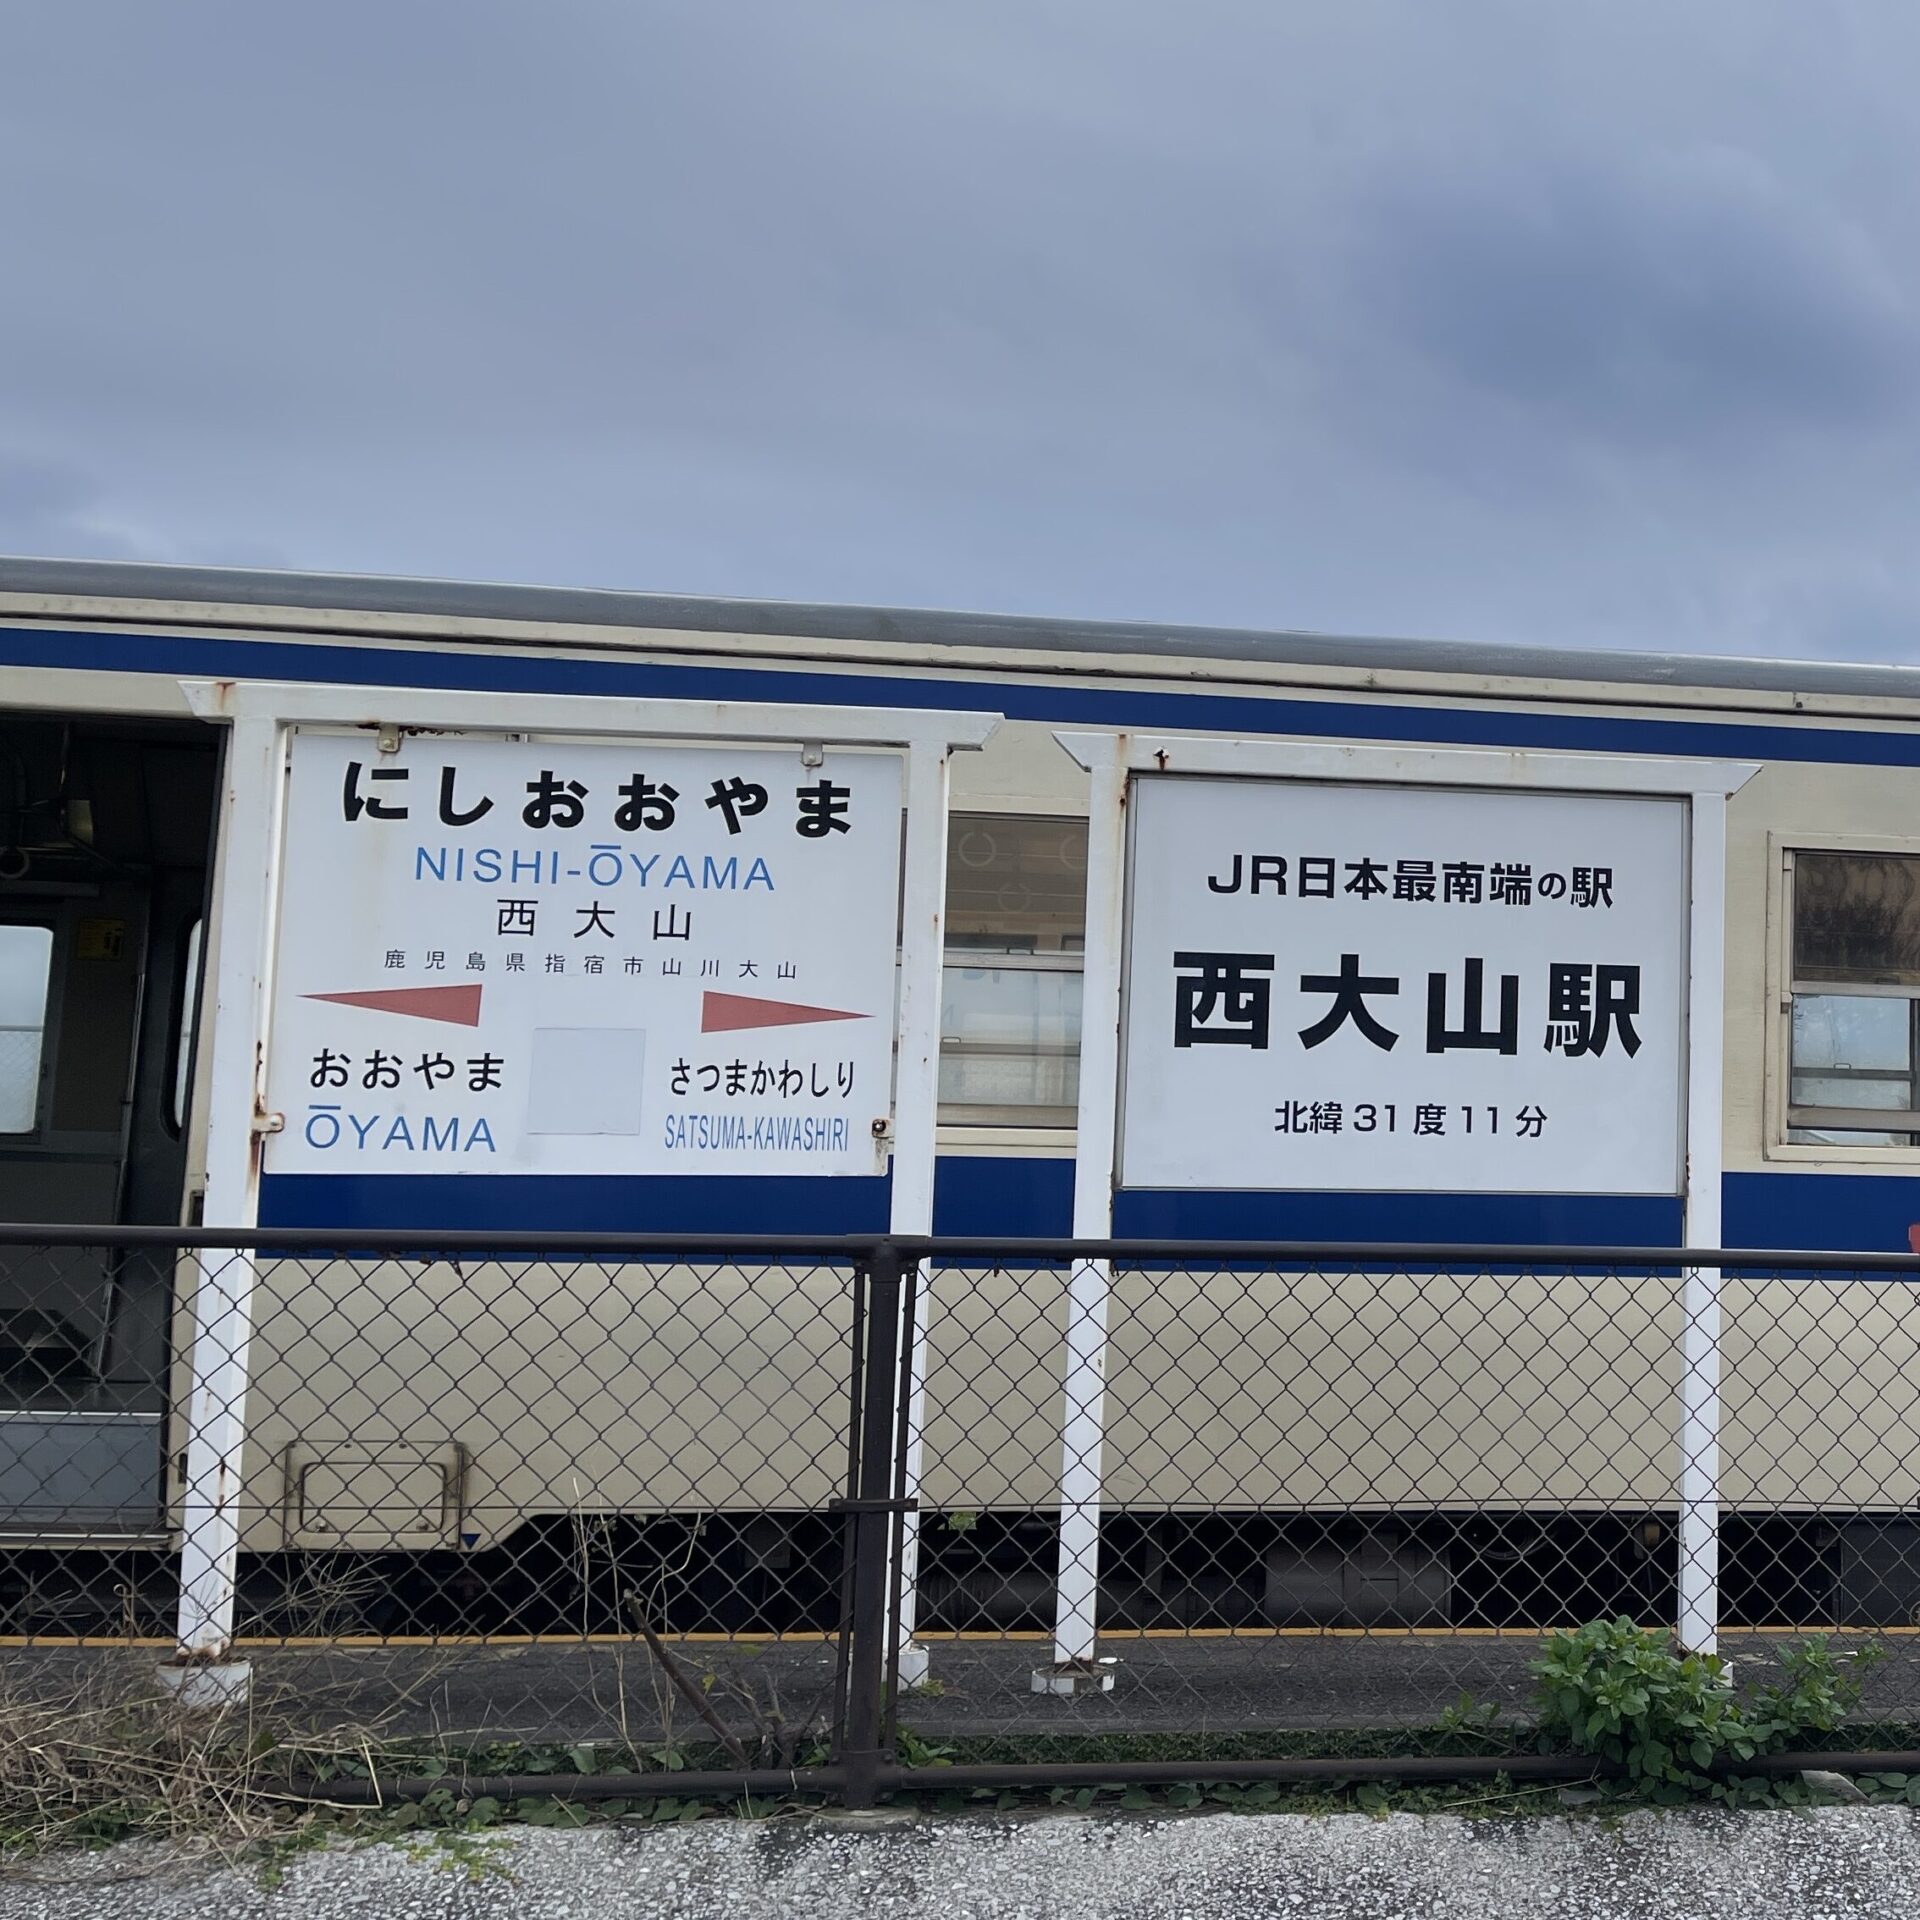 JR日本最南端の駅